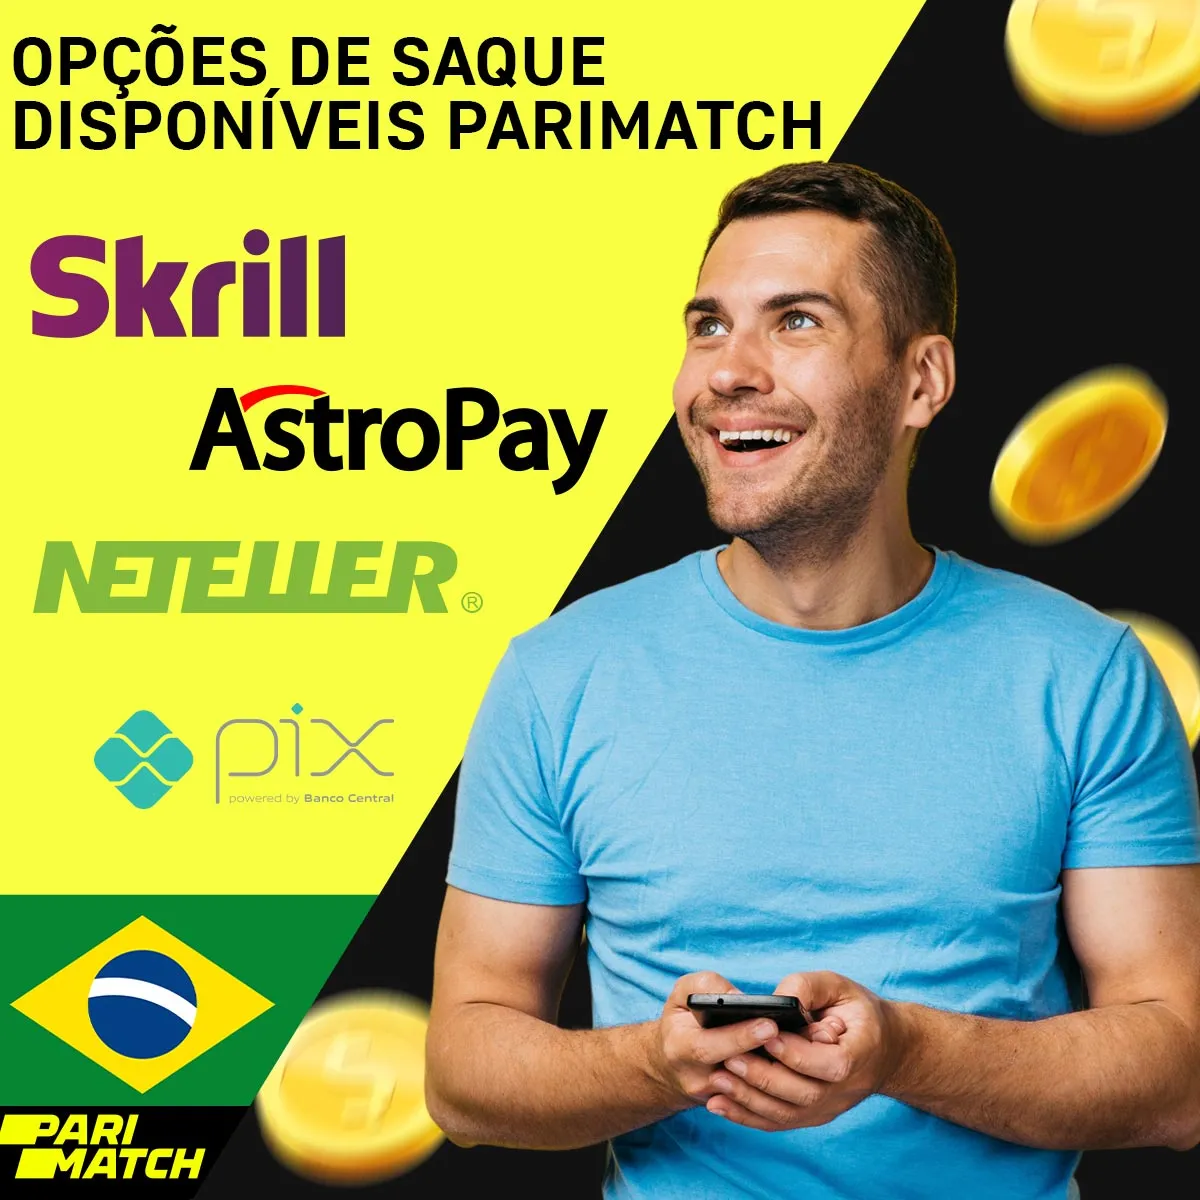 Opções de saque disponíveis na casa de apostas Parimatch no Brasil